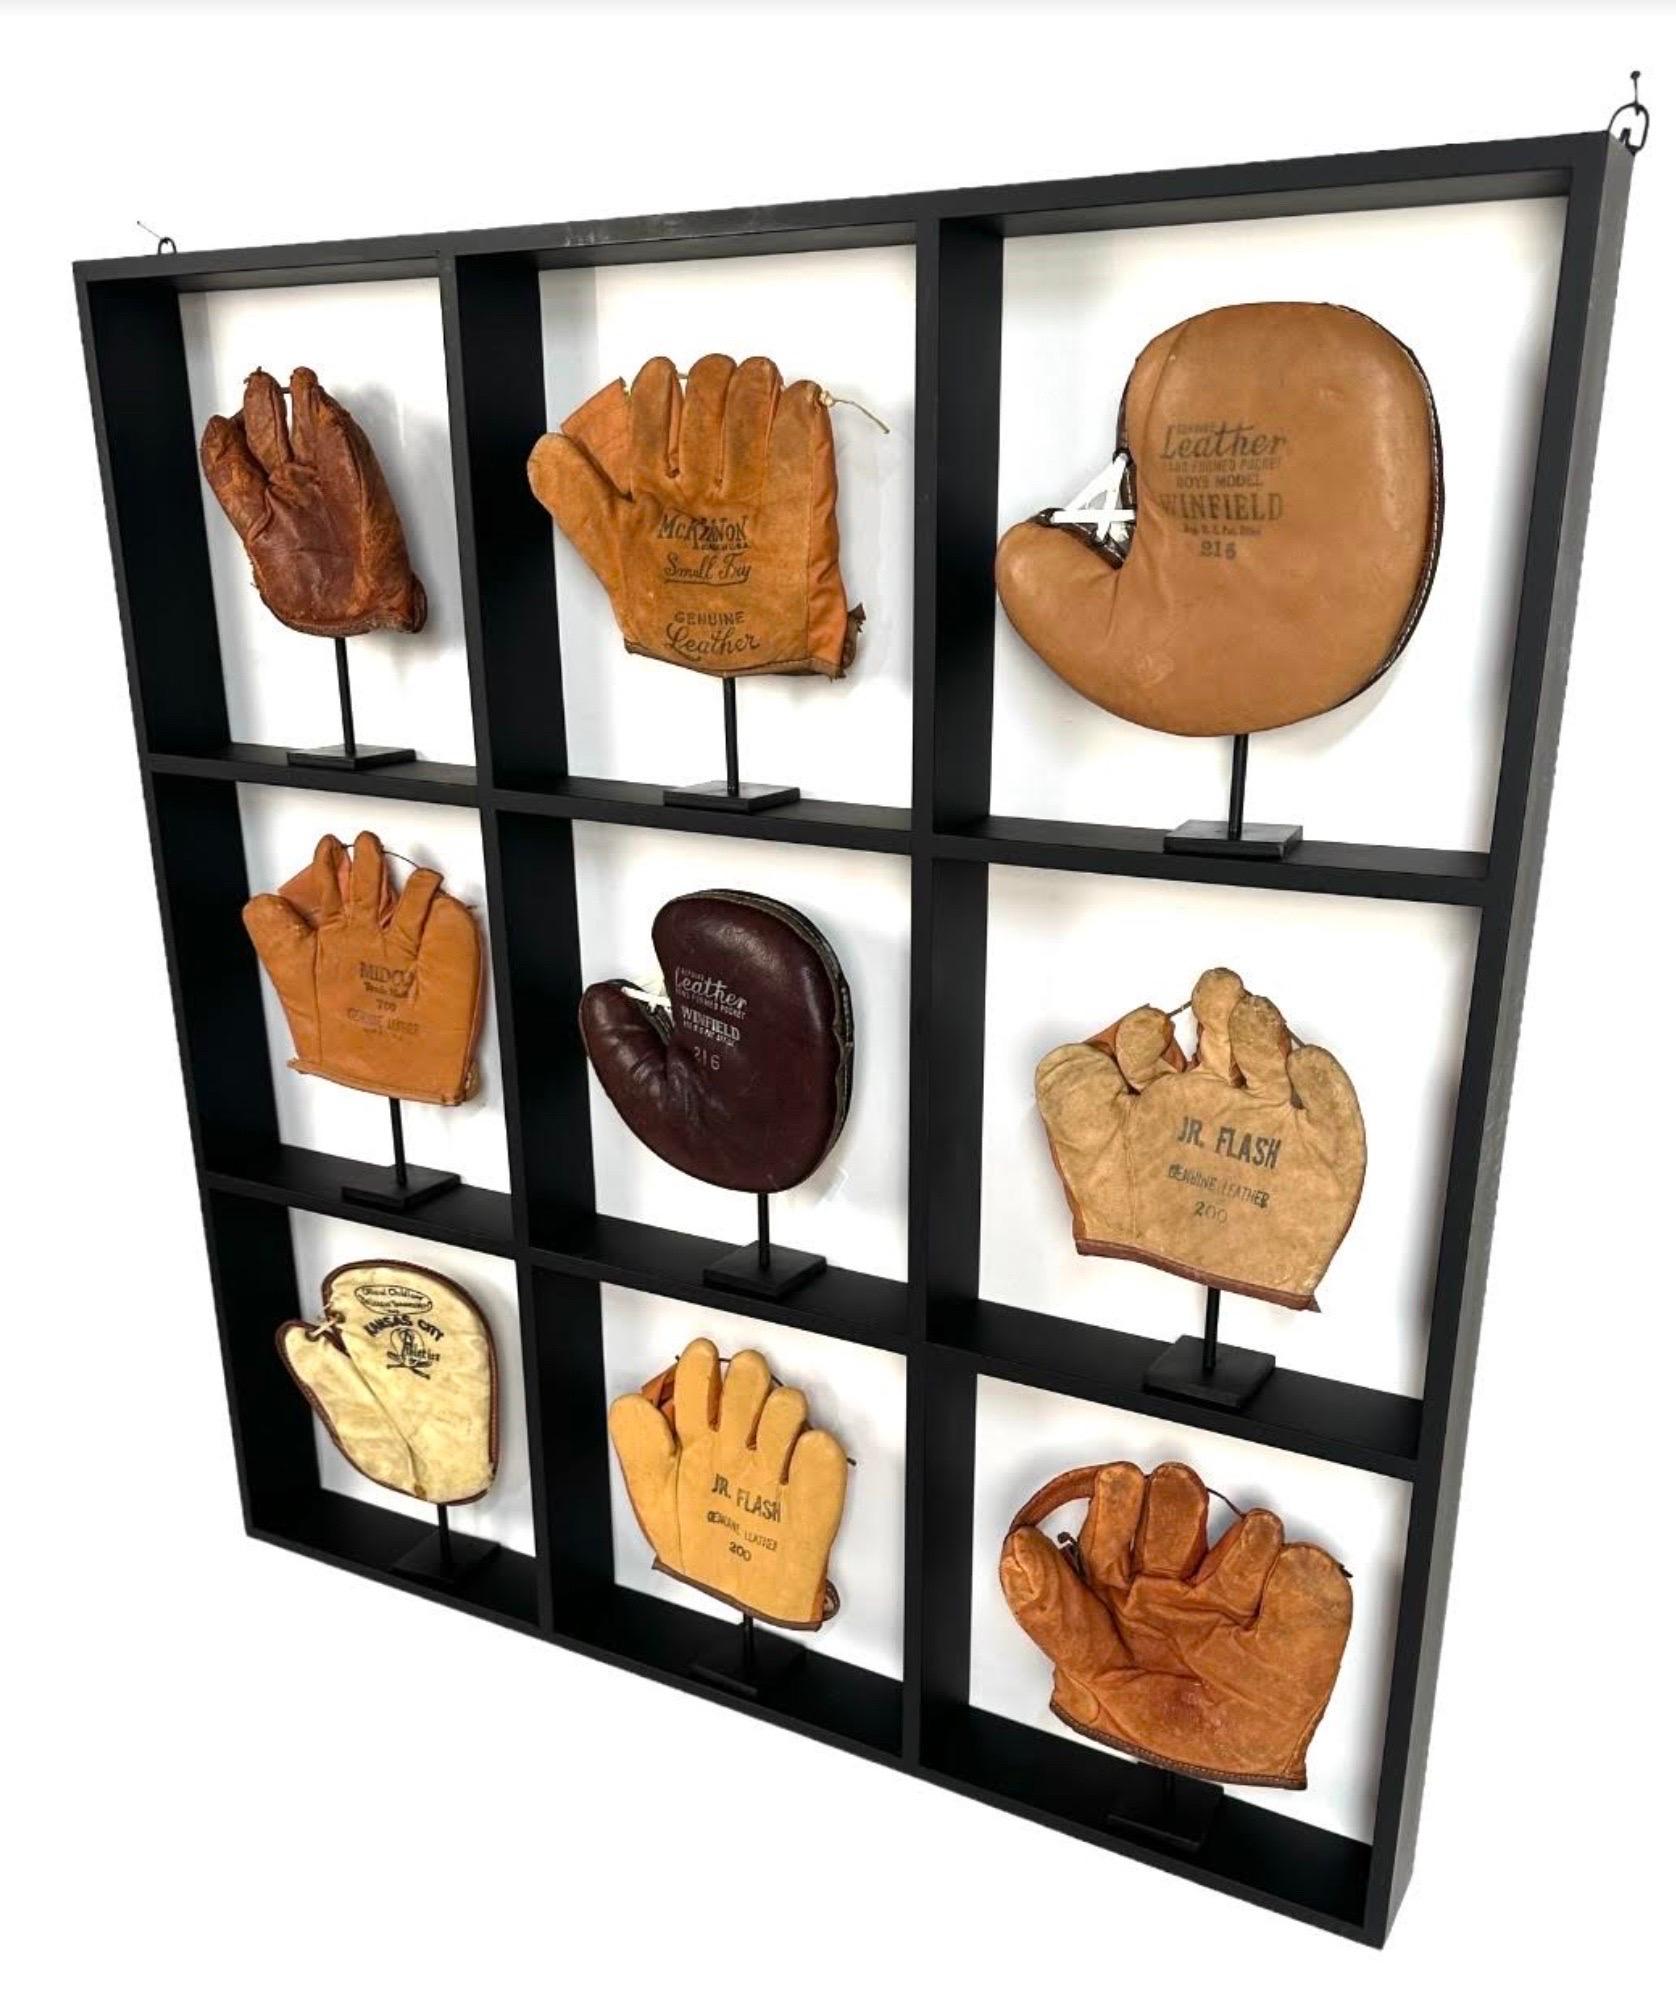 old baseball glove